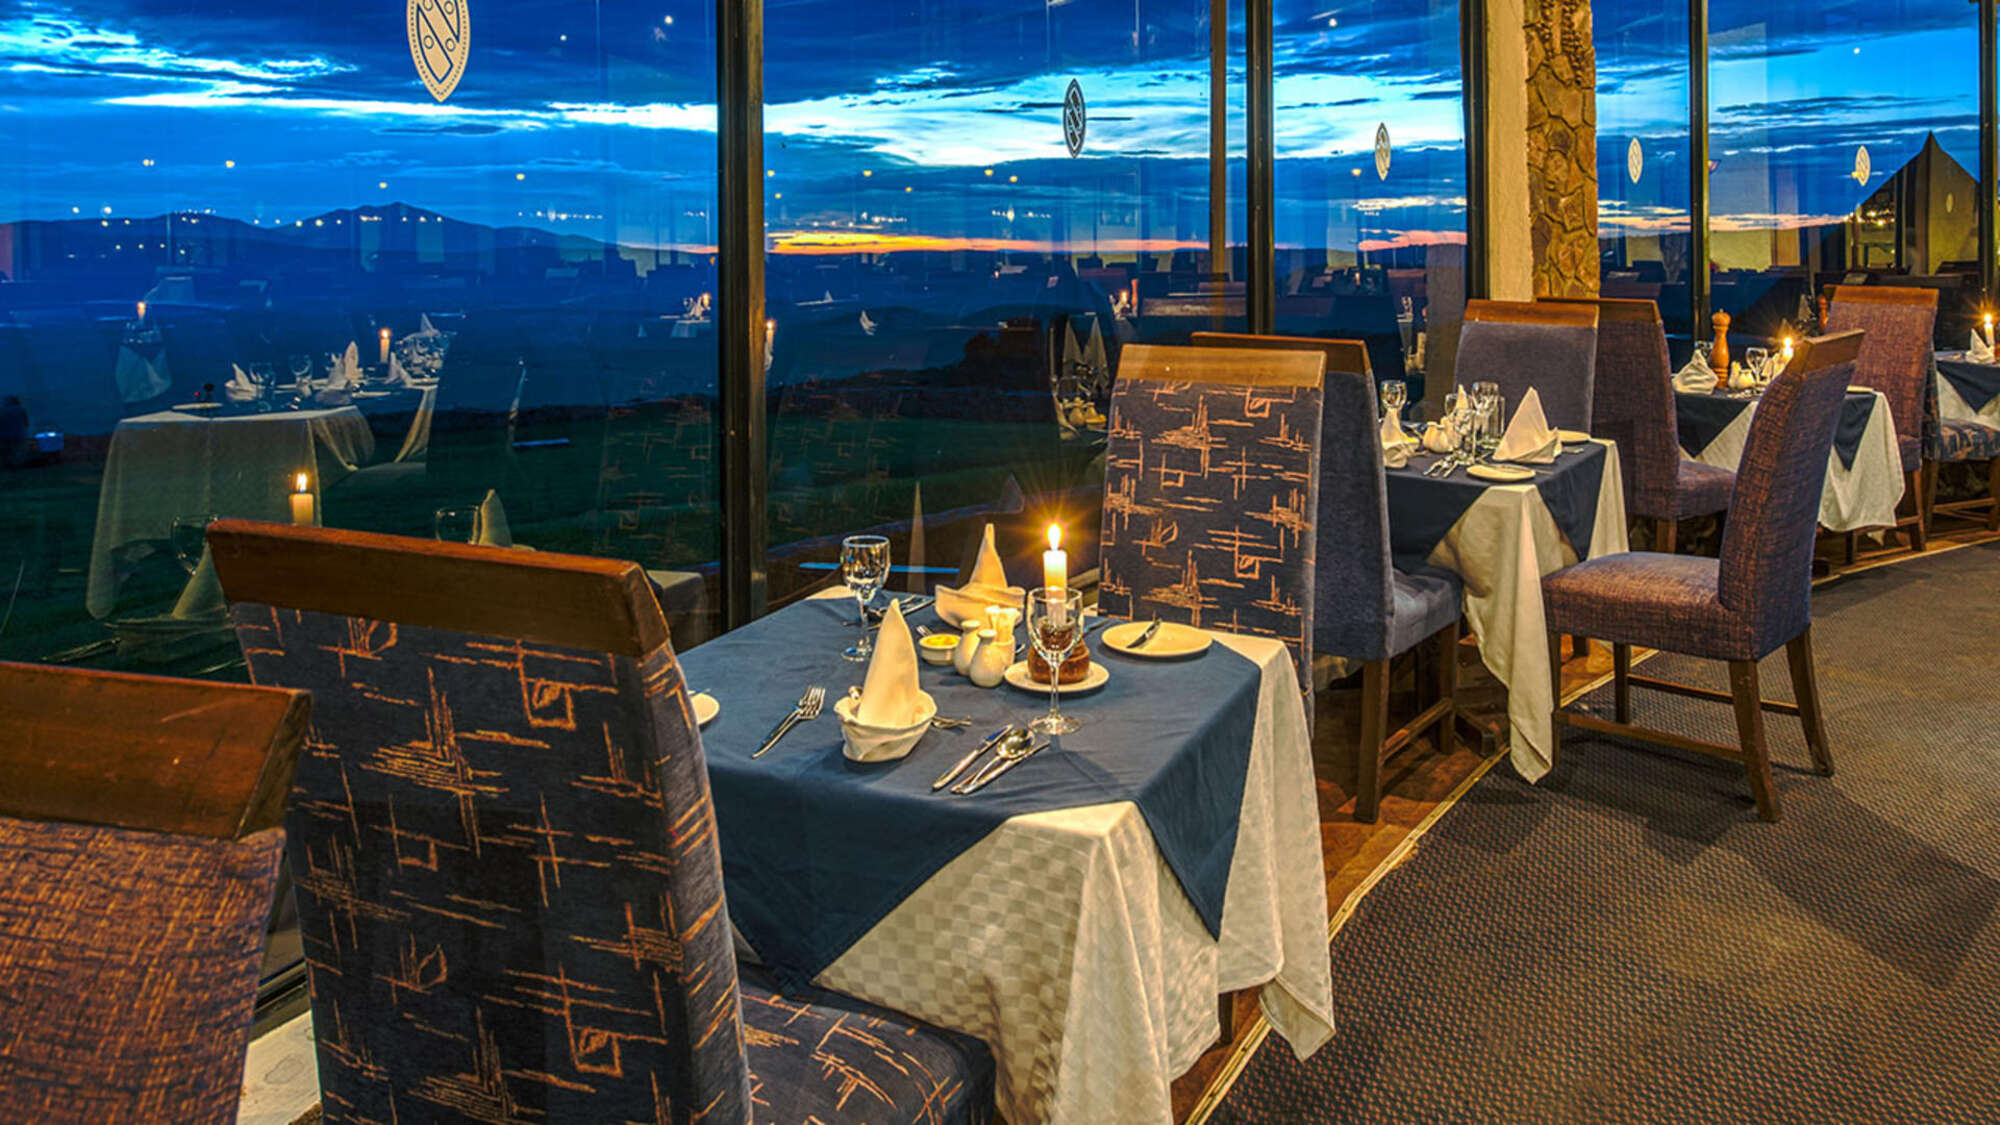 Ngorongoro Sopa Lodge images -- the restaurant